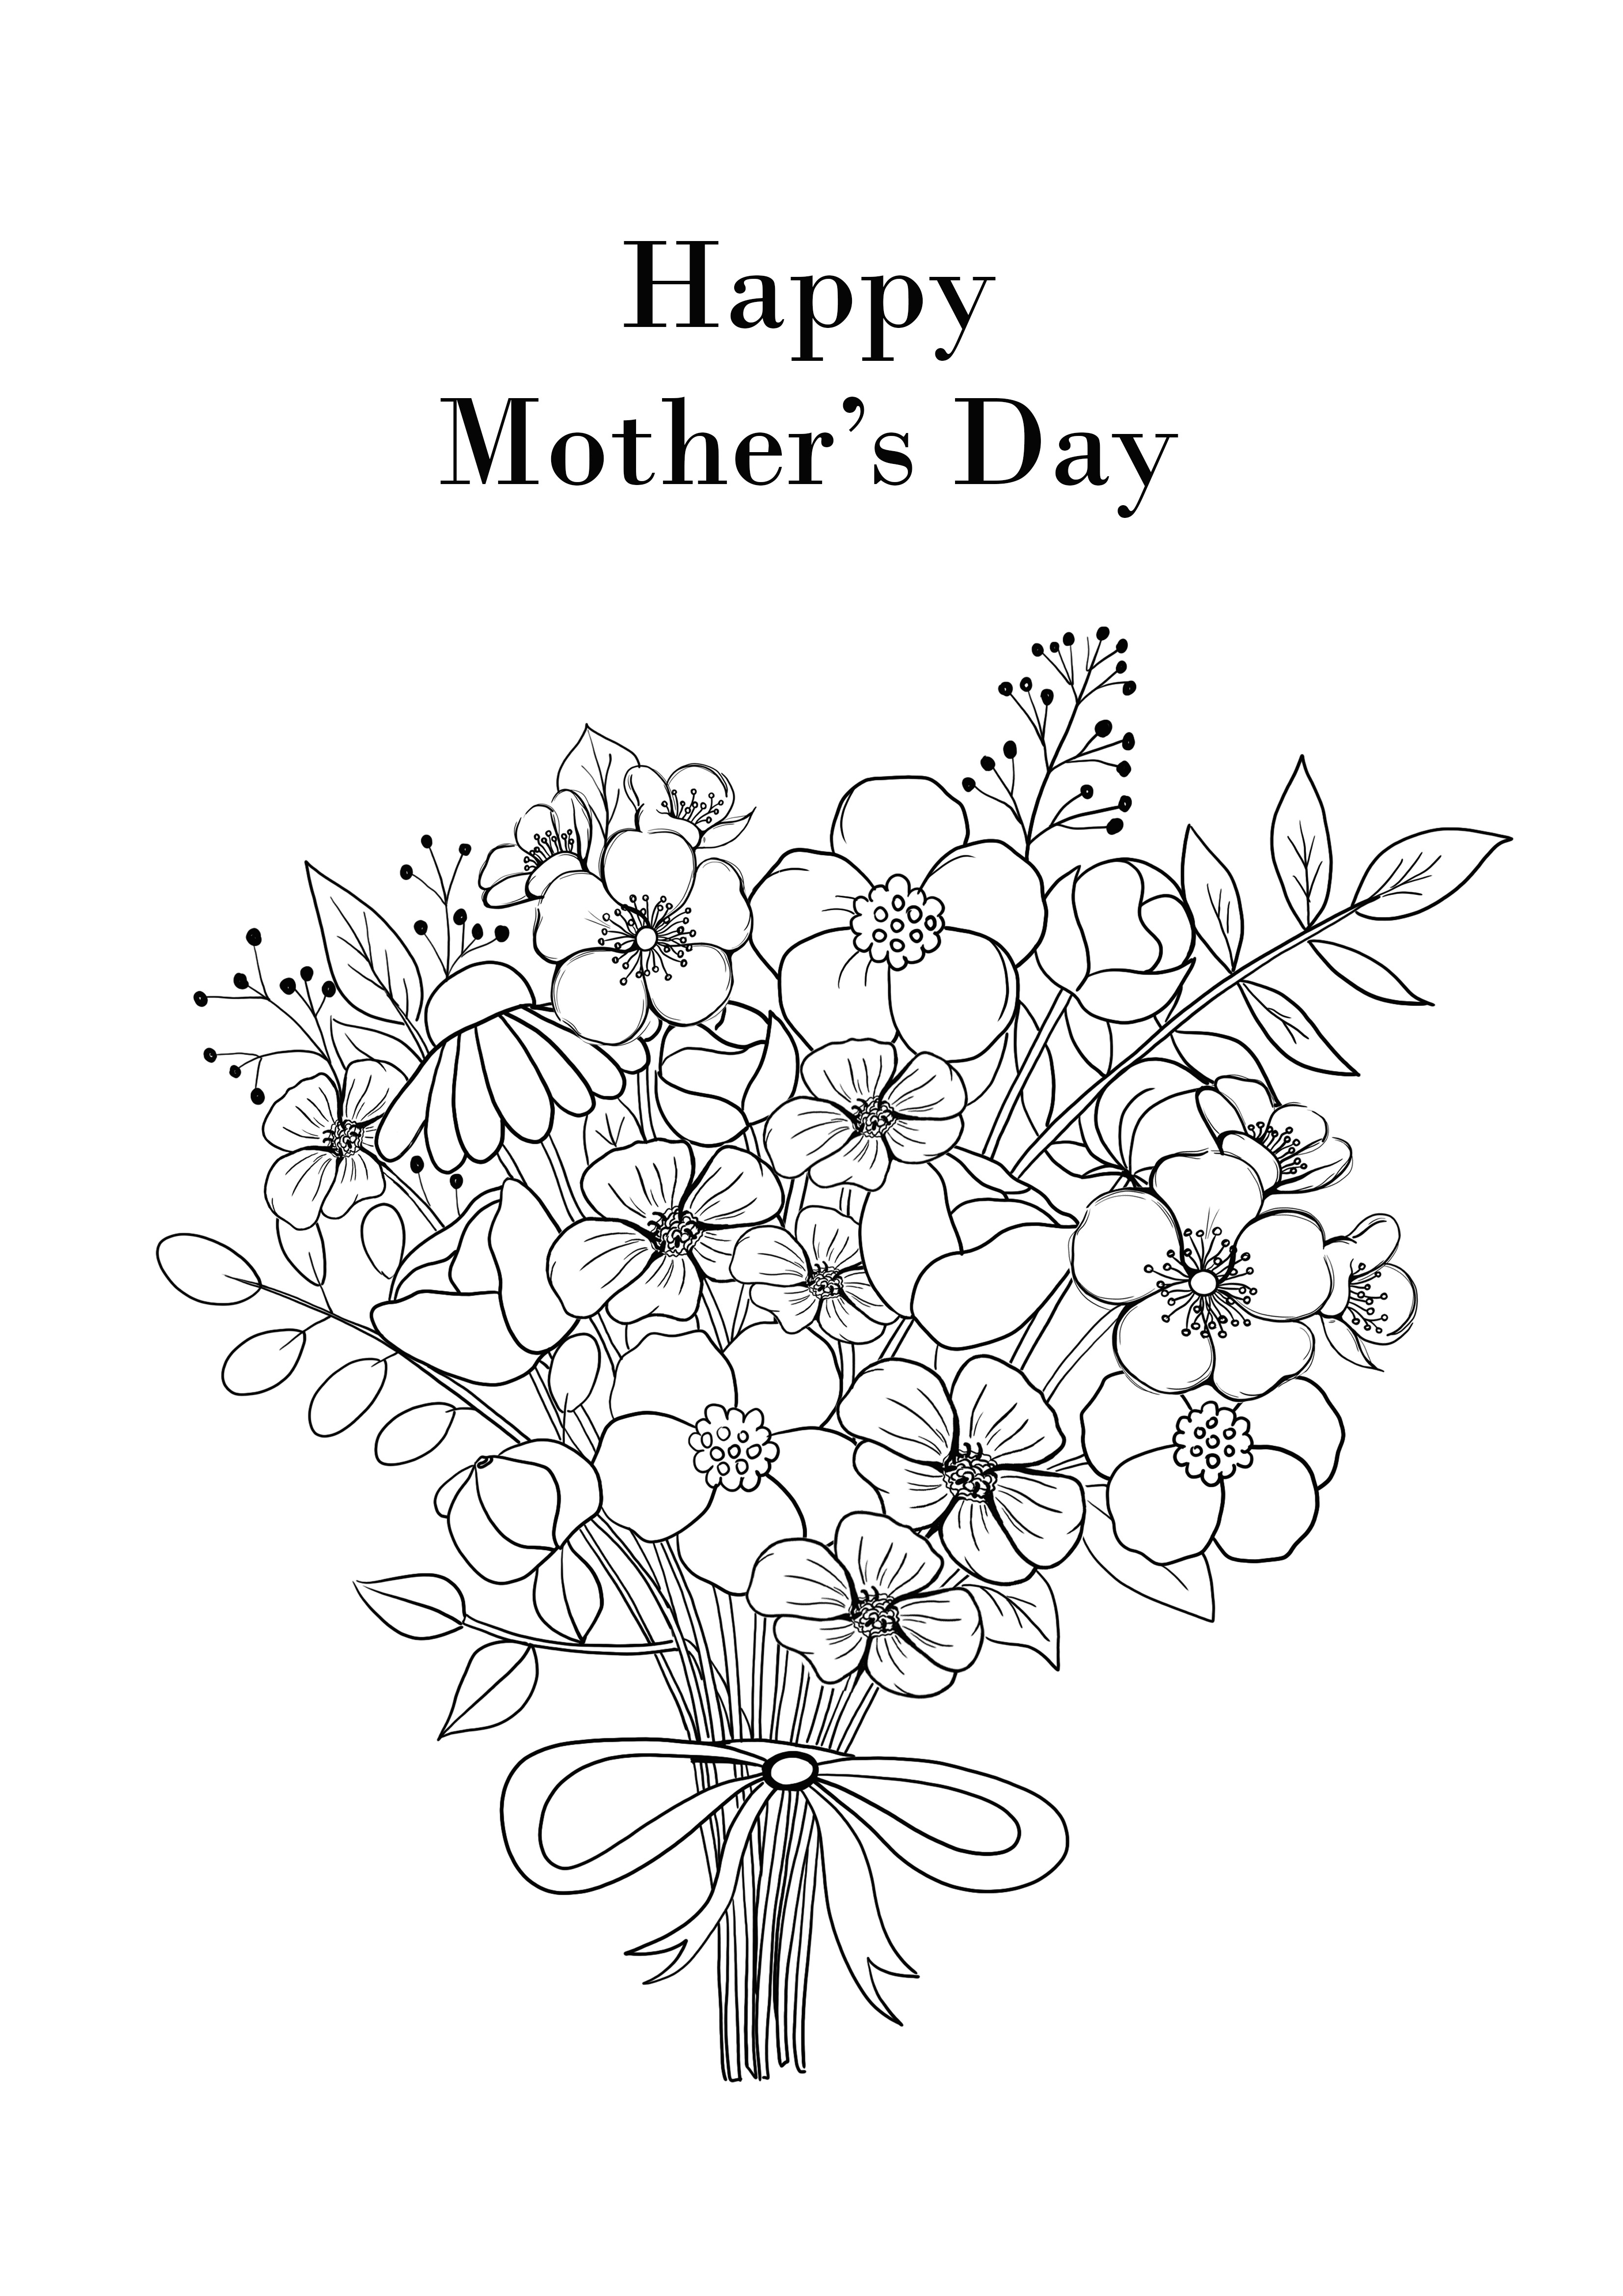 無料で印刷する簡単な母の日の花